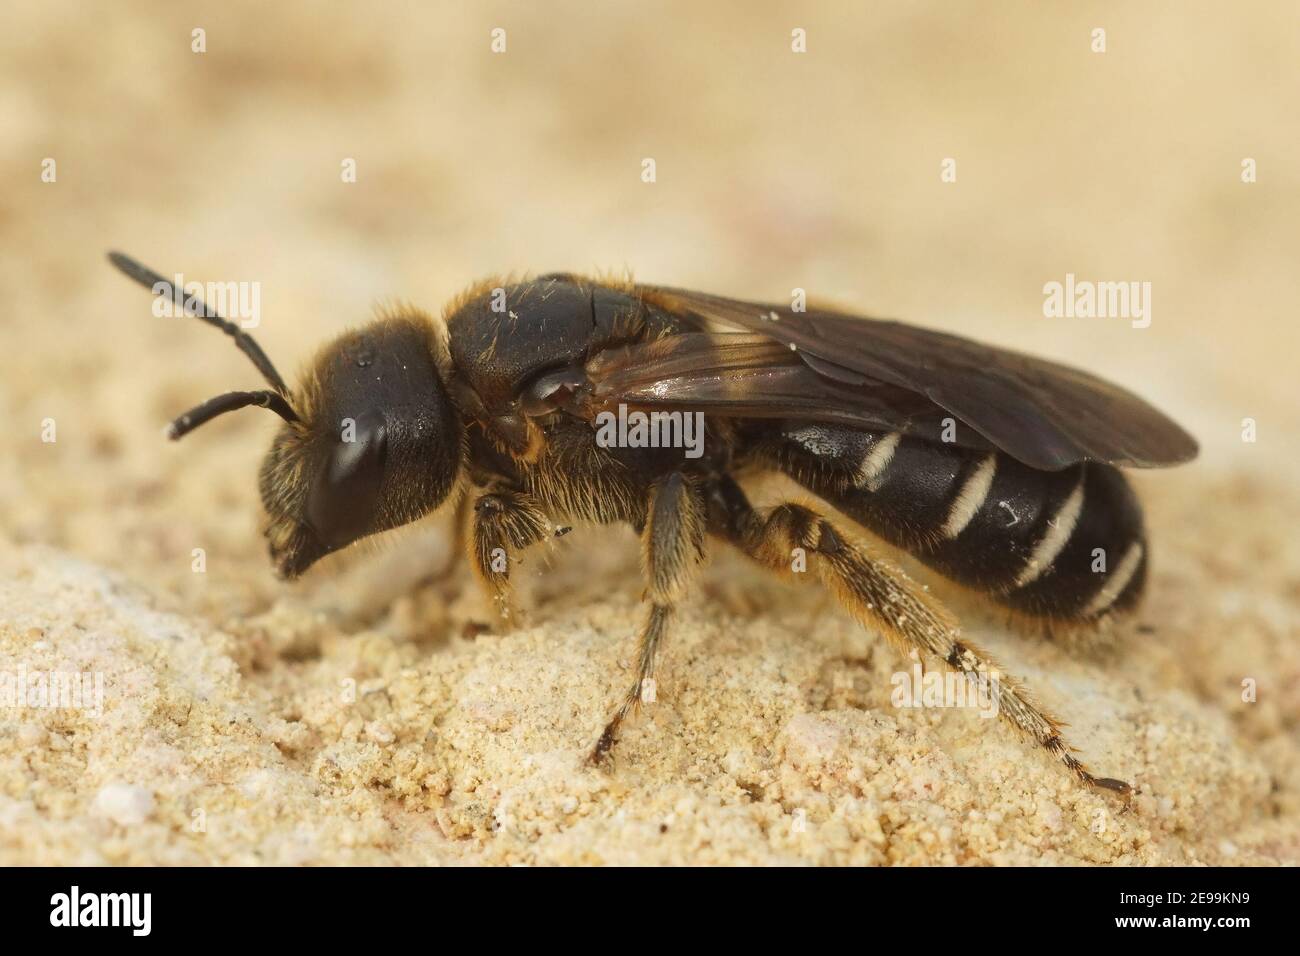 Primo piano di una femmina delle api di solco di colore scuro, Halictus maculatus Foto Stock